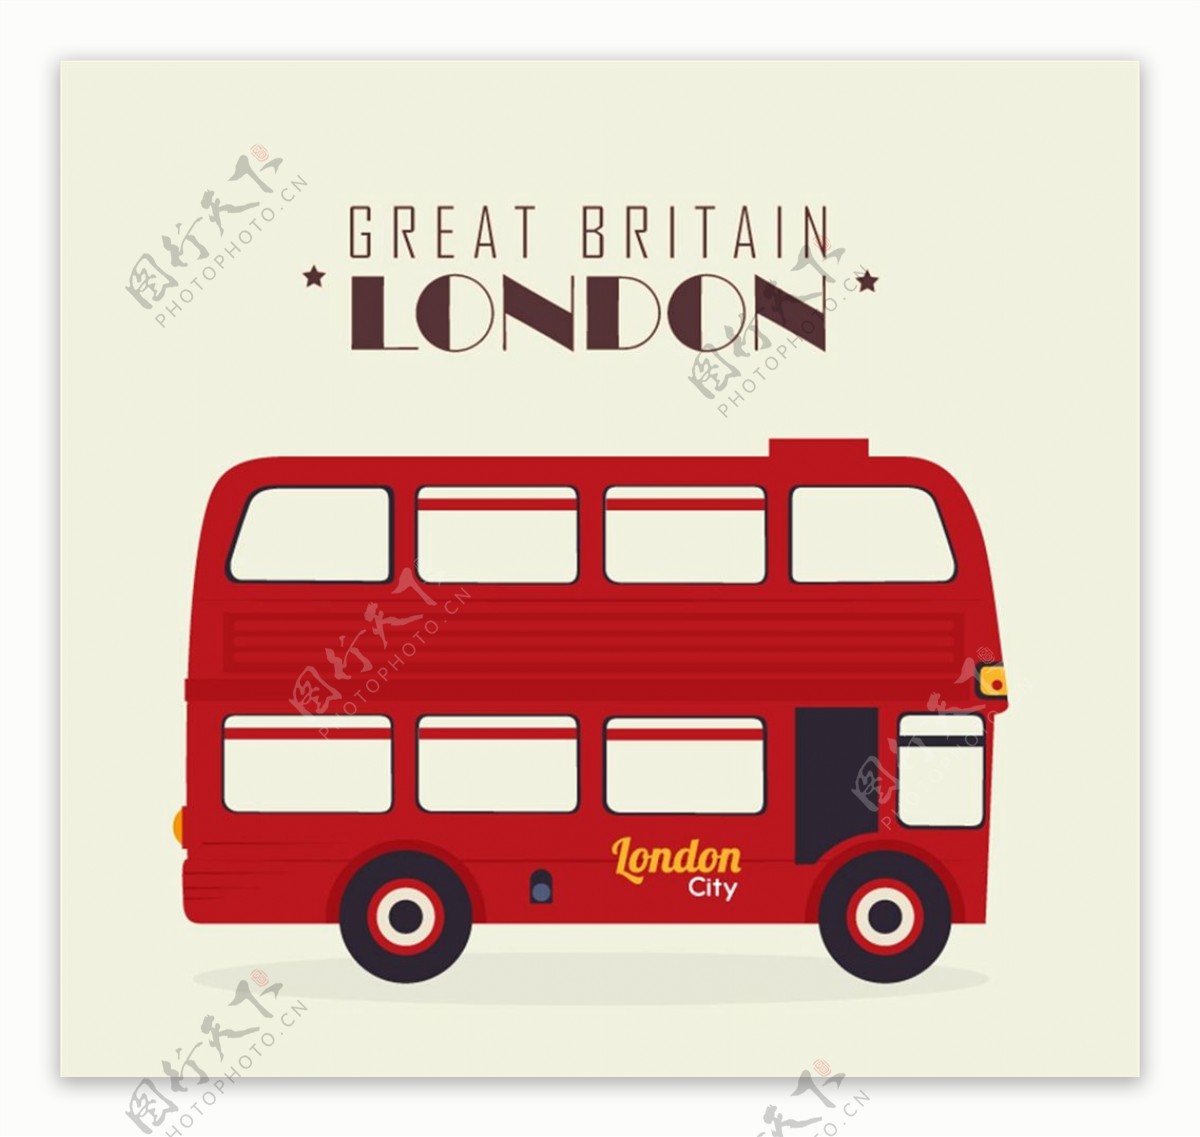 伦敦双层巴士图片